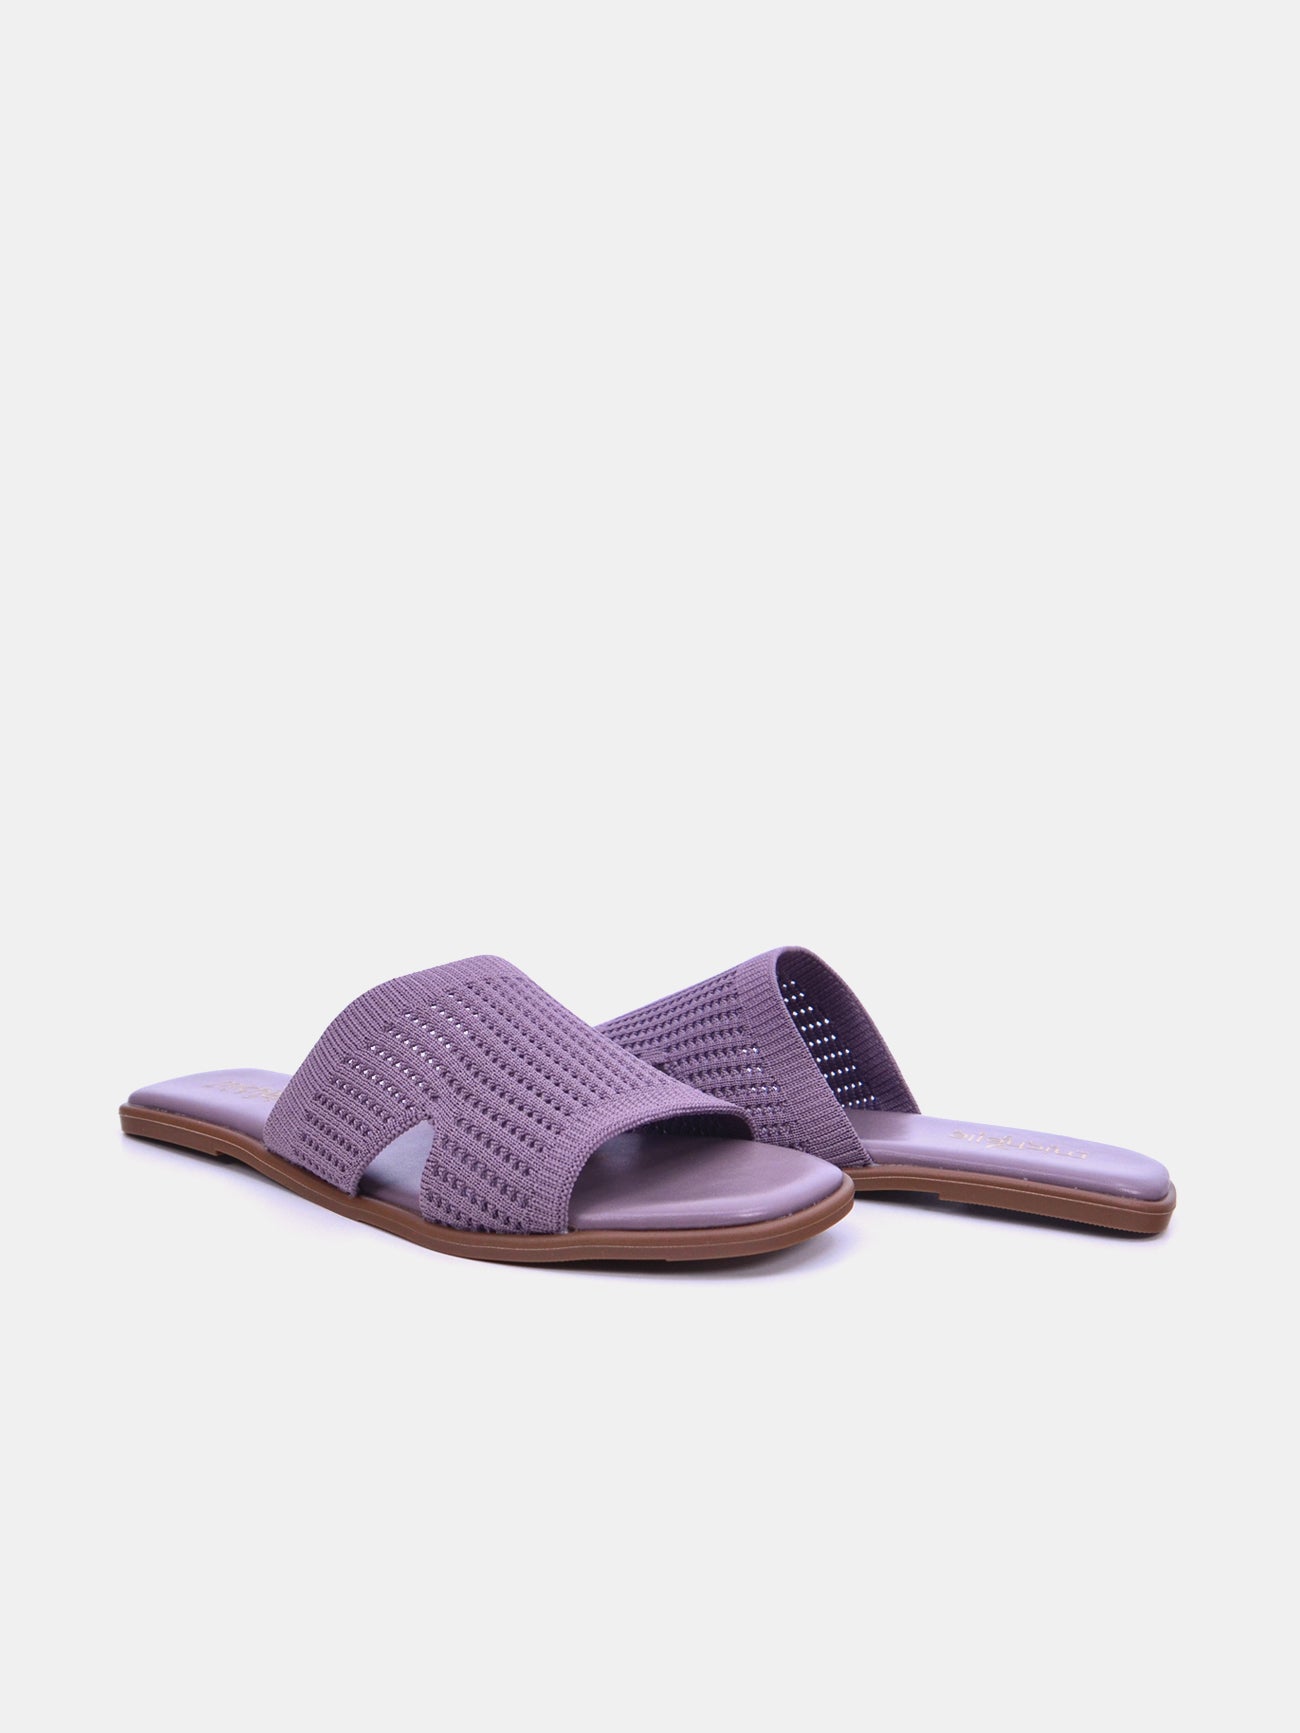 Michelle Morgan 114RJ10H Women's Flat Sandals #color_Purple